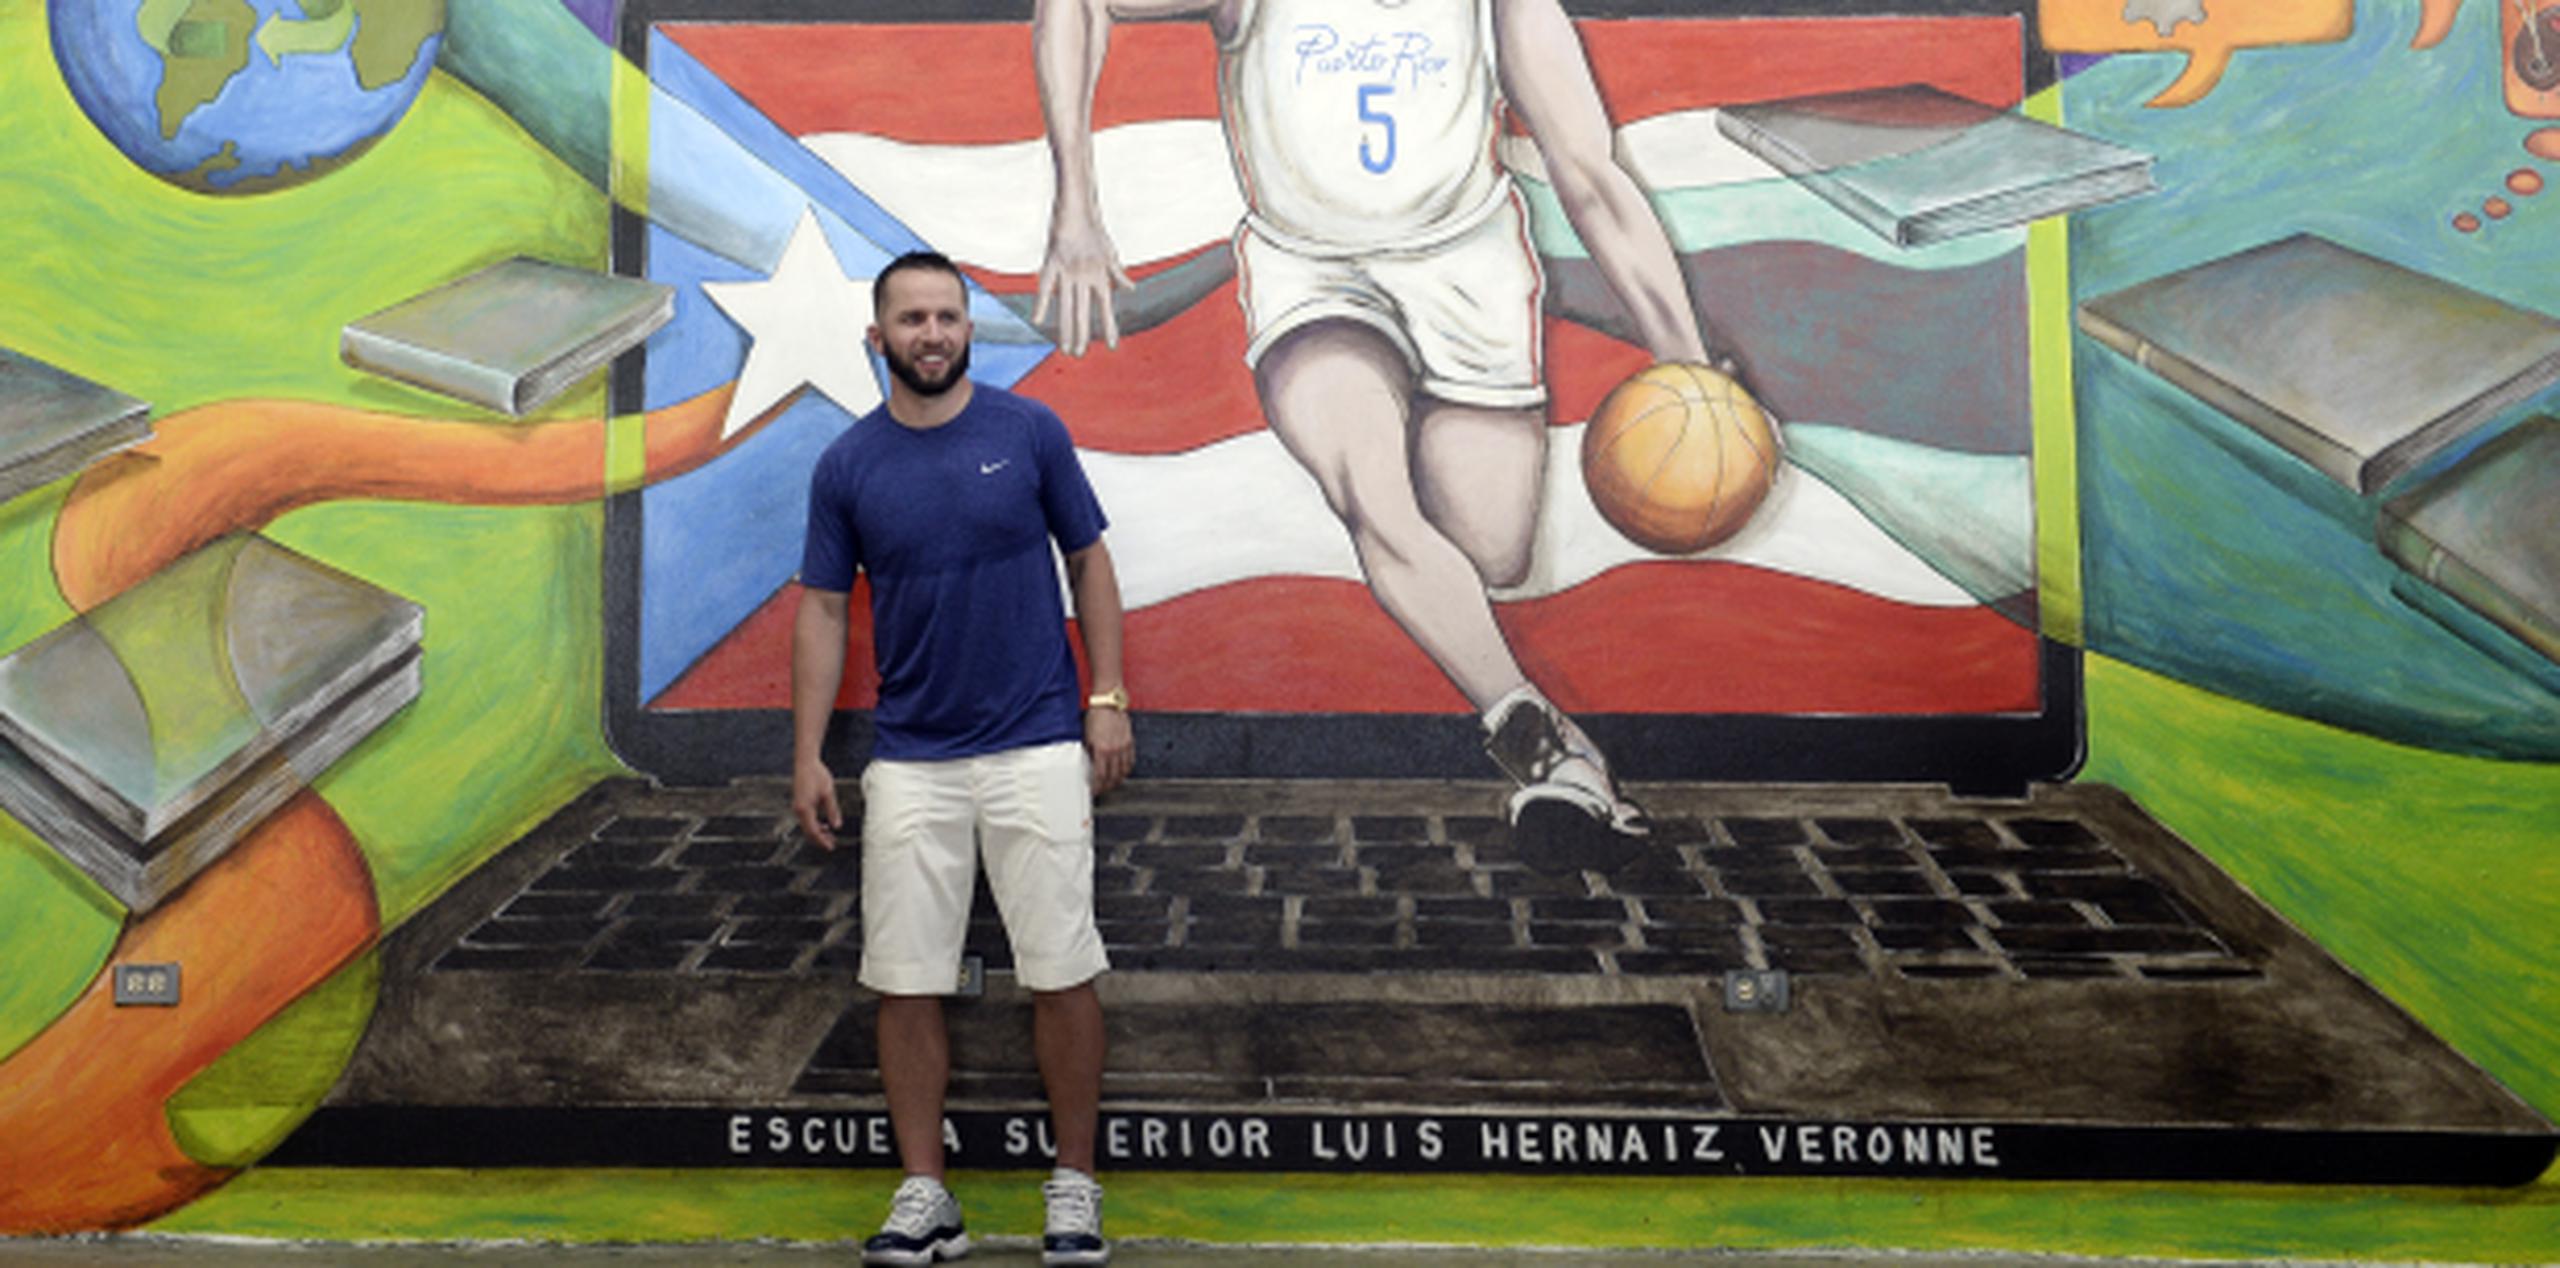 El mayagüezano posó frente al mural en su honor, en la escuela Luis Hernaiz Veronne, en Canóvanas. (gerald.lopez@gfrmedia.com)